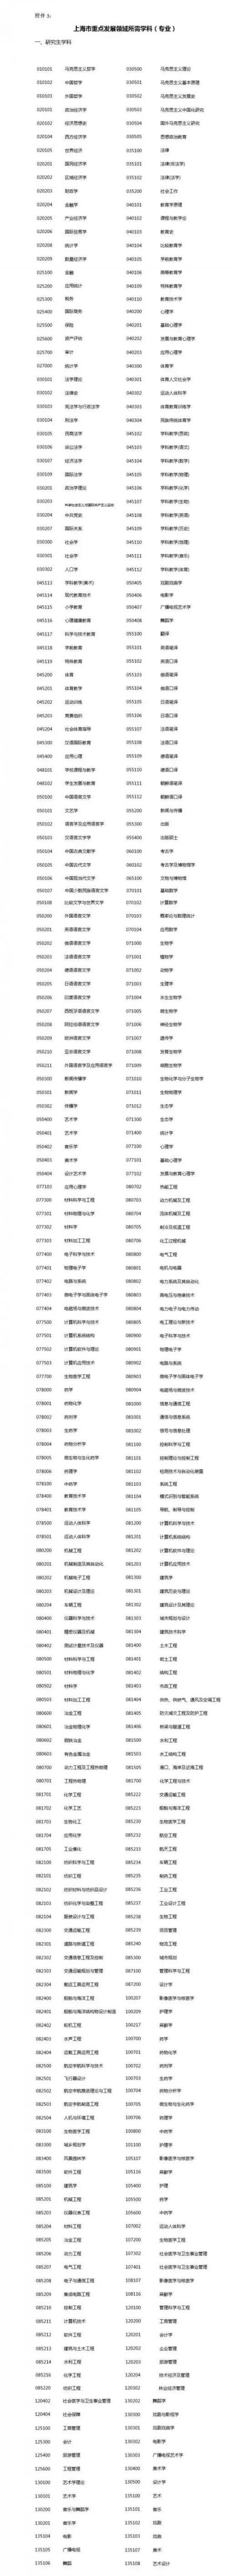 2018应届生申请落户上海办法公布 标准分为72分